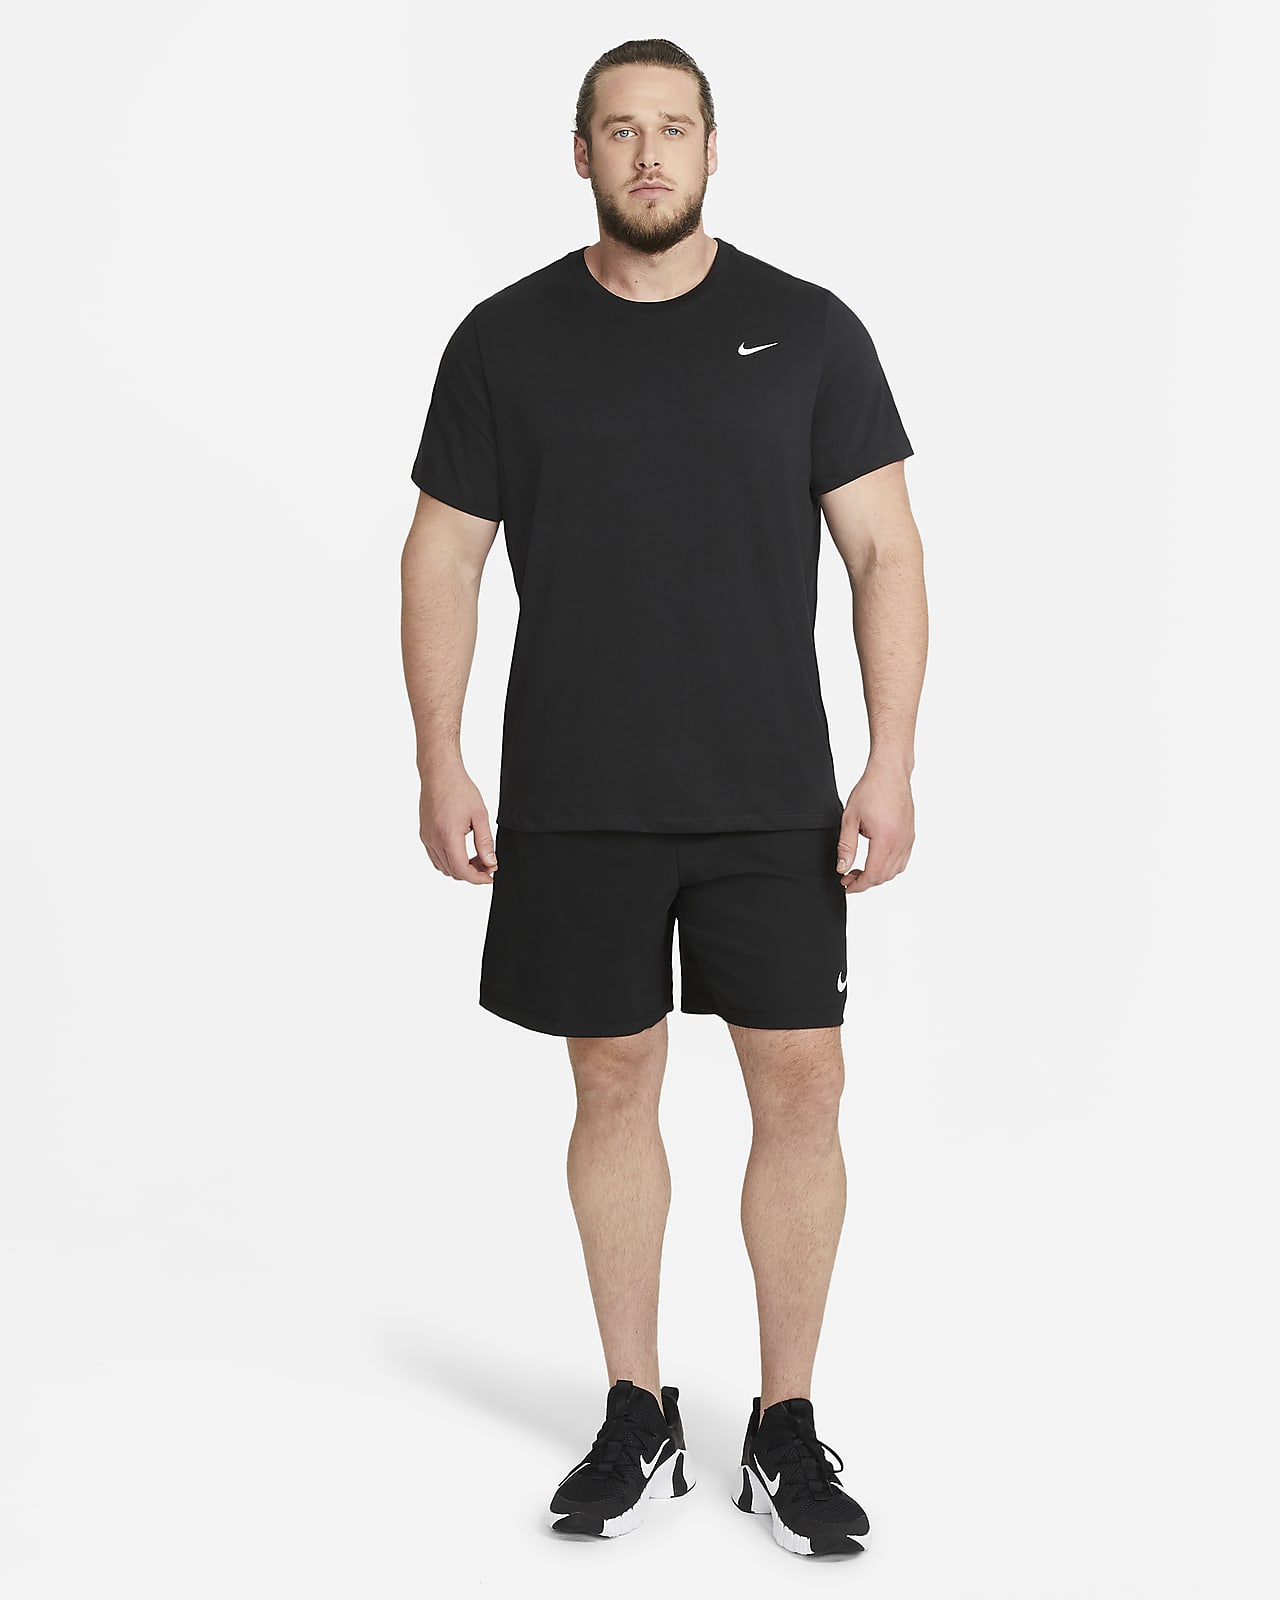 Nike Dri-FIT Men's Training T-Shirt. Nike.com